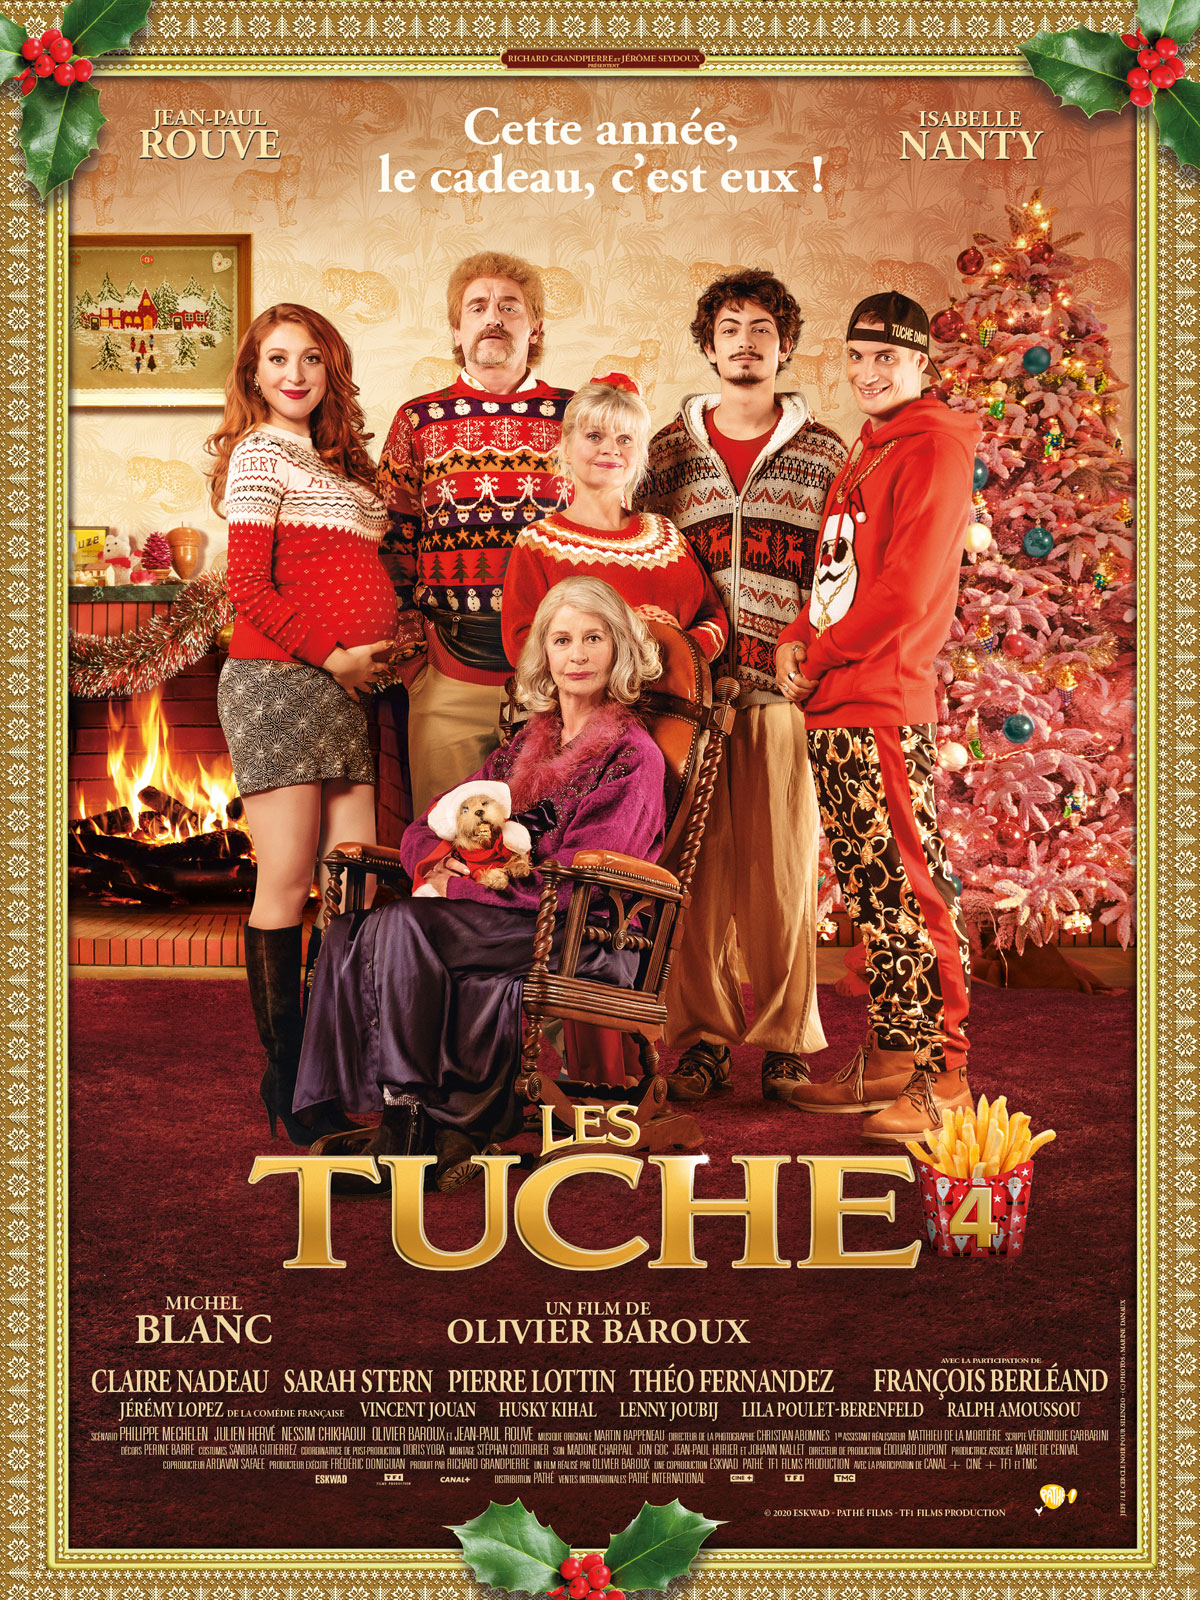 A Tuche család karácsonya